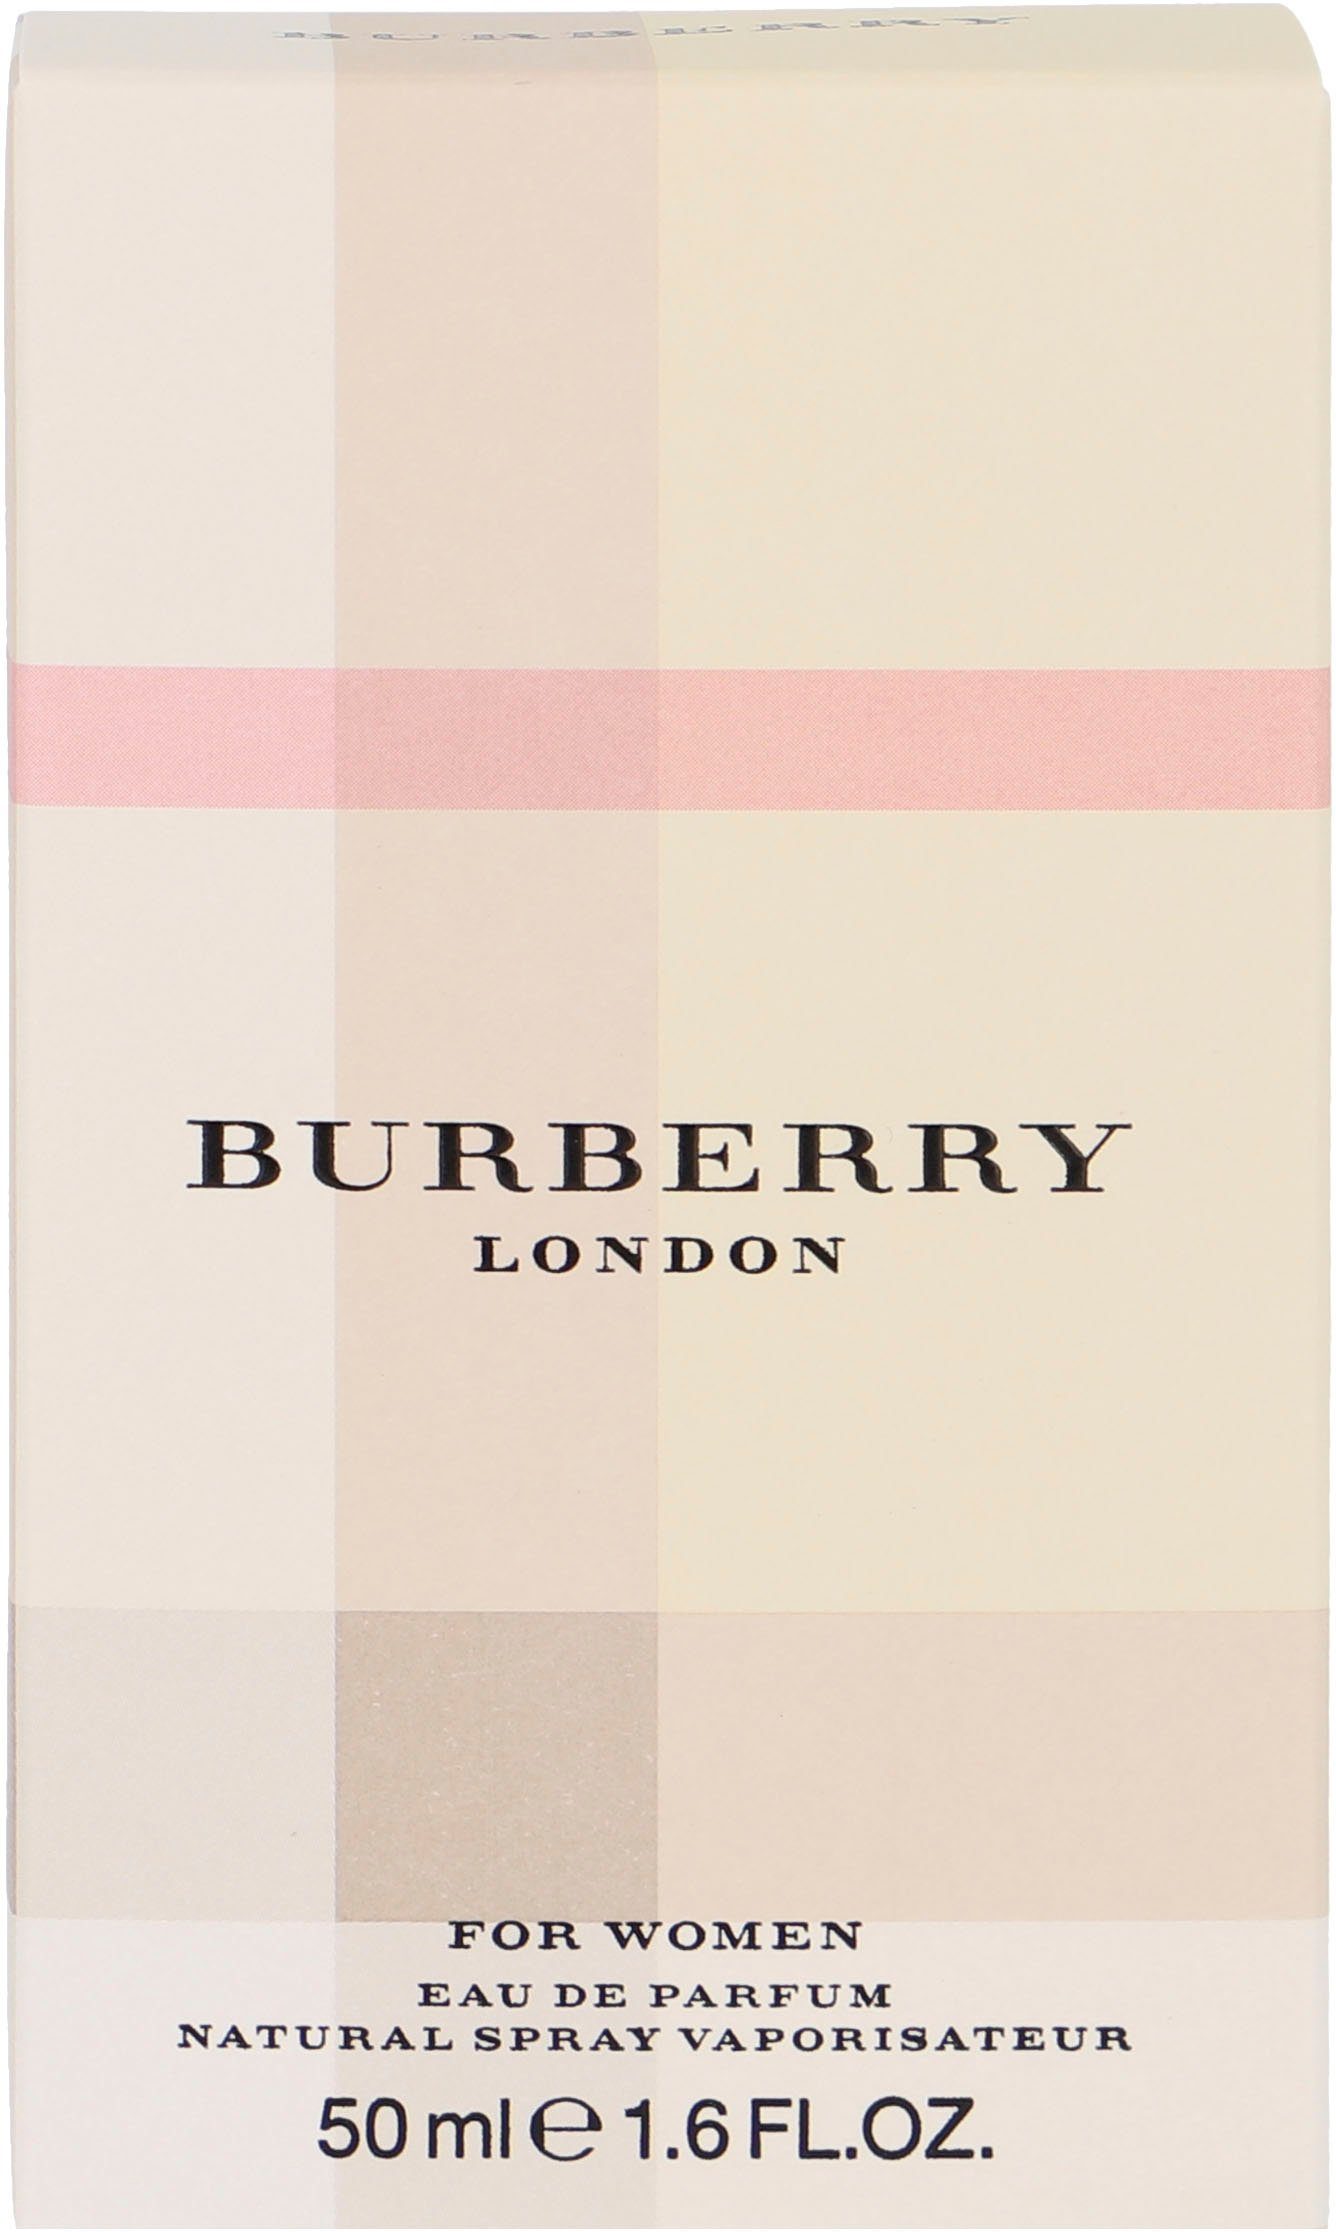 BURBERRY Eau Parfum de London